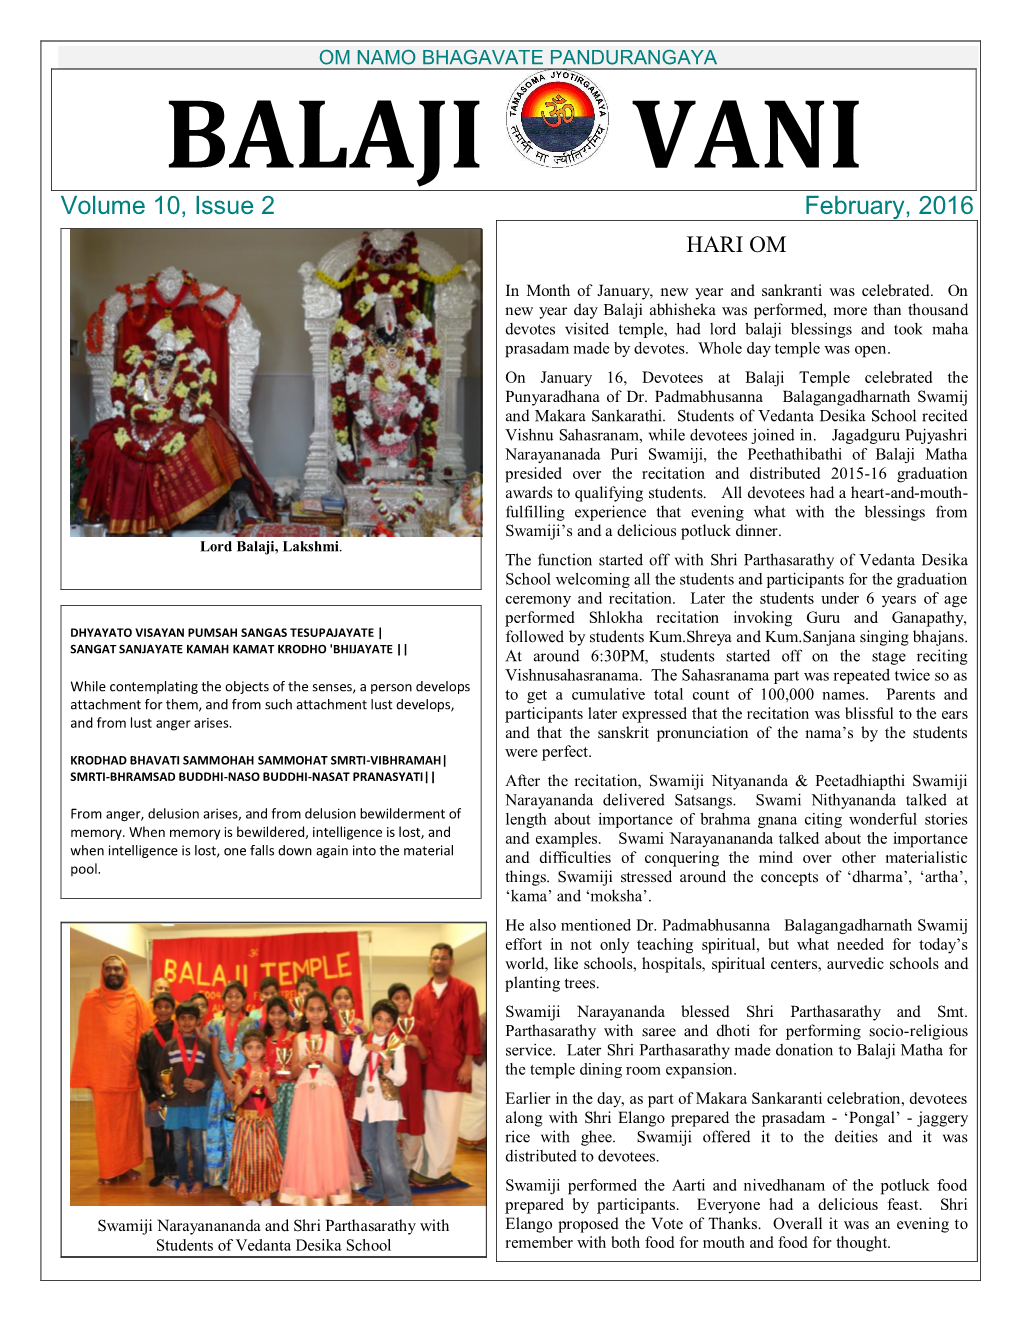 OM NAMO BHAGAVATE PANDURANGAYA BALAJI VANI Volume 10, Issue 2 February, 2016